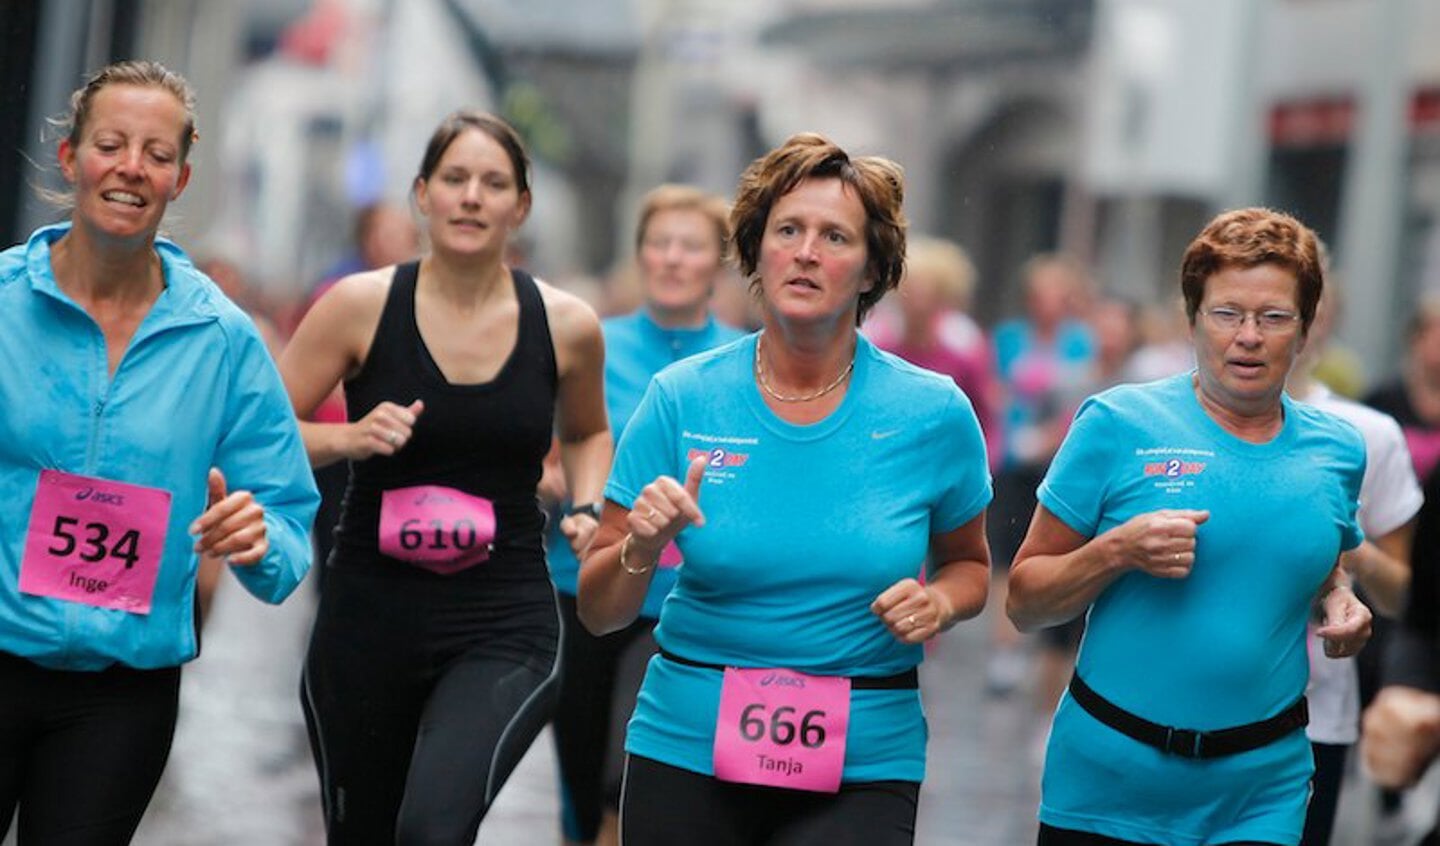 De deelnemers aan vijf kilometer van de eerste Ladiesrun door het centrum van Breda. foto Peter Visser